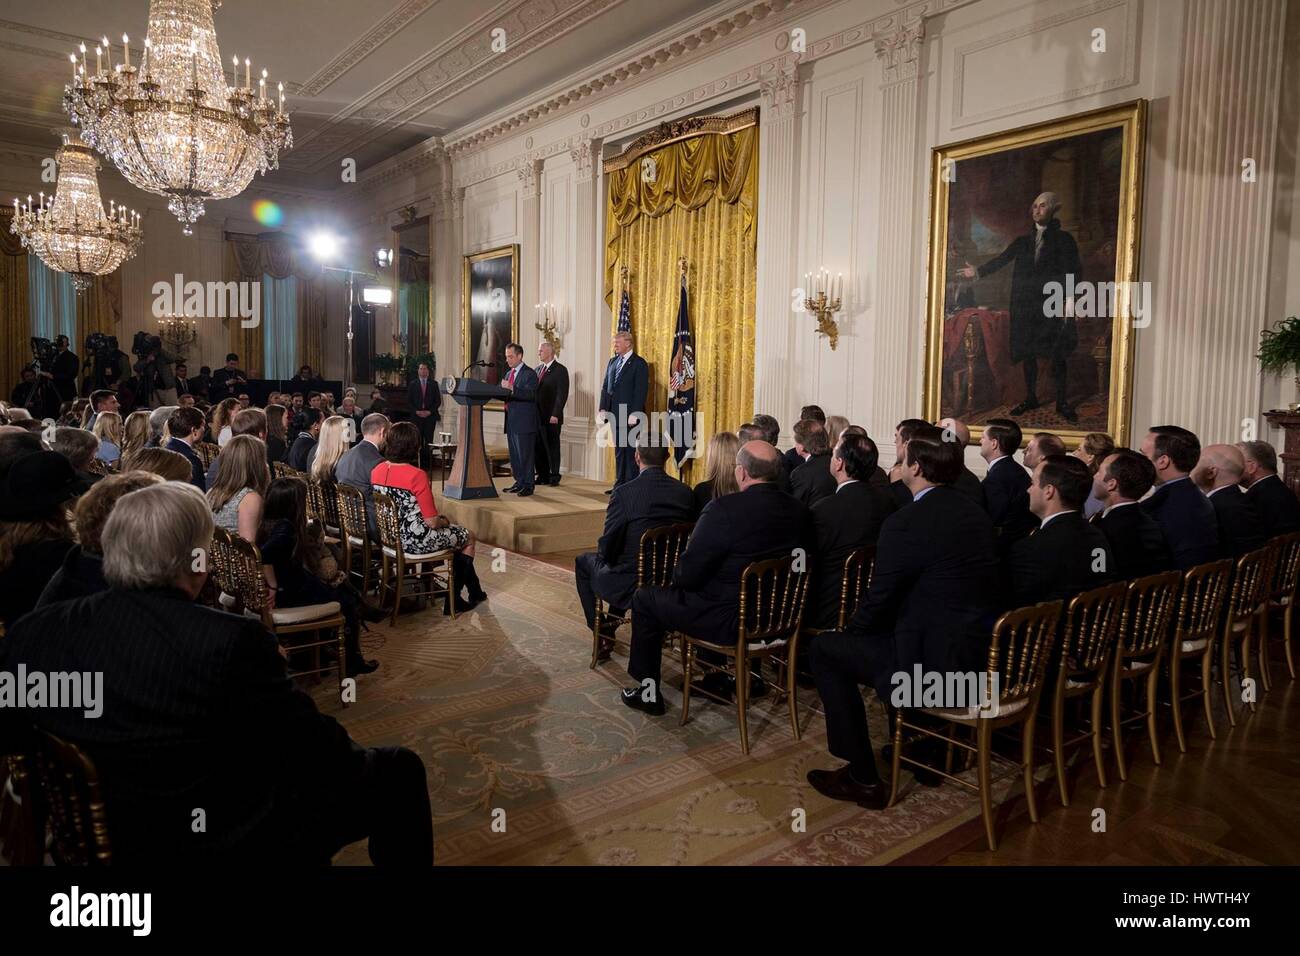 US-Präsident Donald Trump und Vizepräsident Mike Pence sehen als Chef des Stabes Reince Priebus die Vereidigung für White House Senior Staff im East Room des weißen Hauses 22. Januar 2017 in Washington, D.C. führt Stockfoto